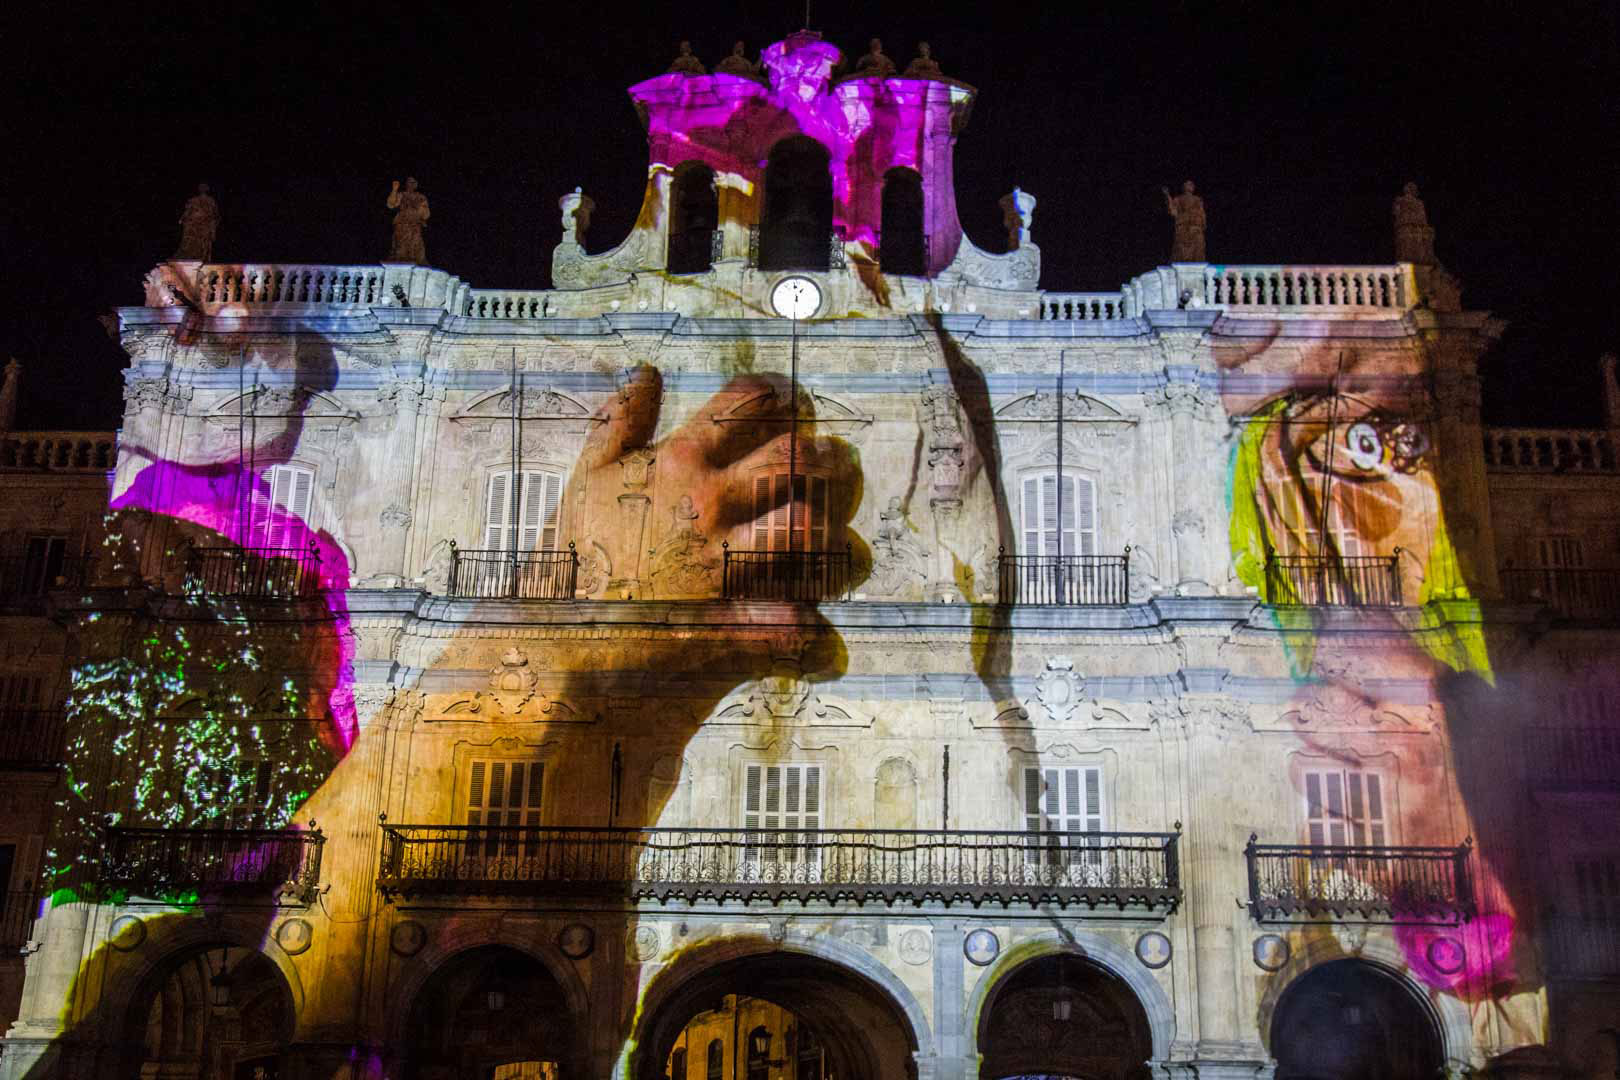 Video Mapping Festival de Luz y Vanguardia 2019 Salamanca, España